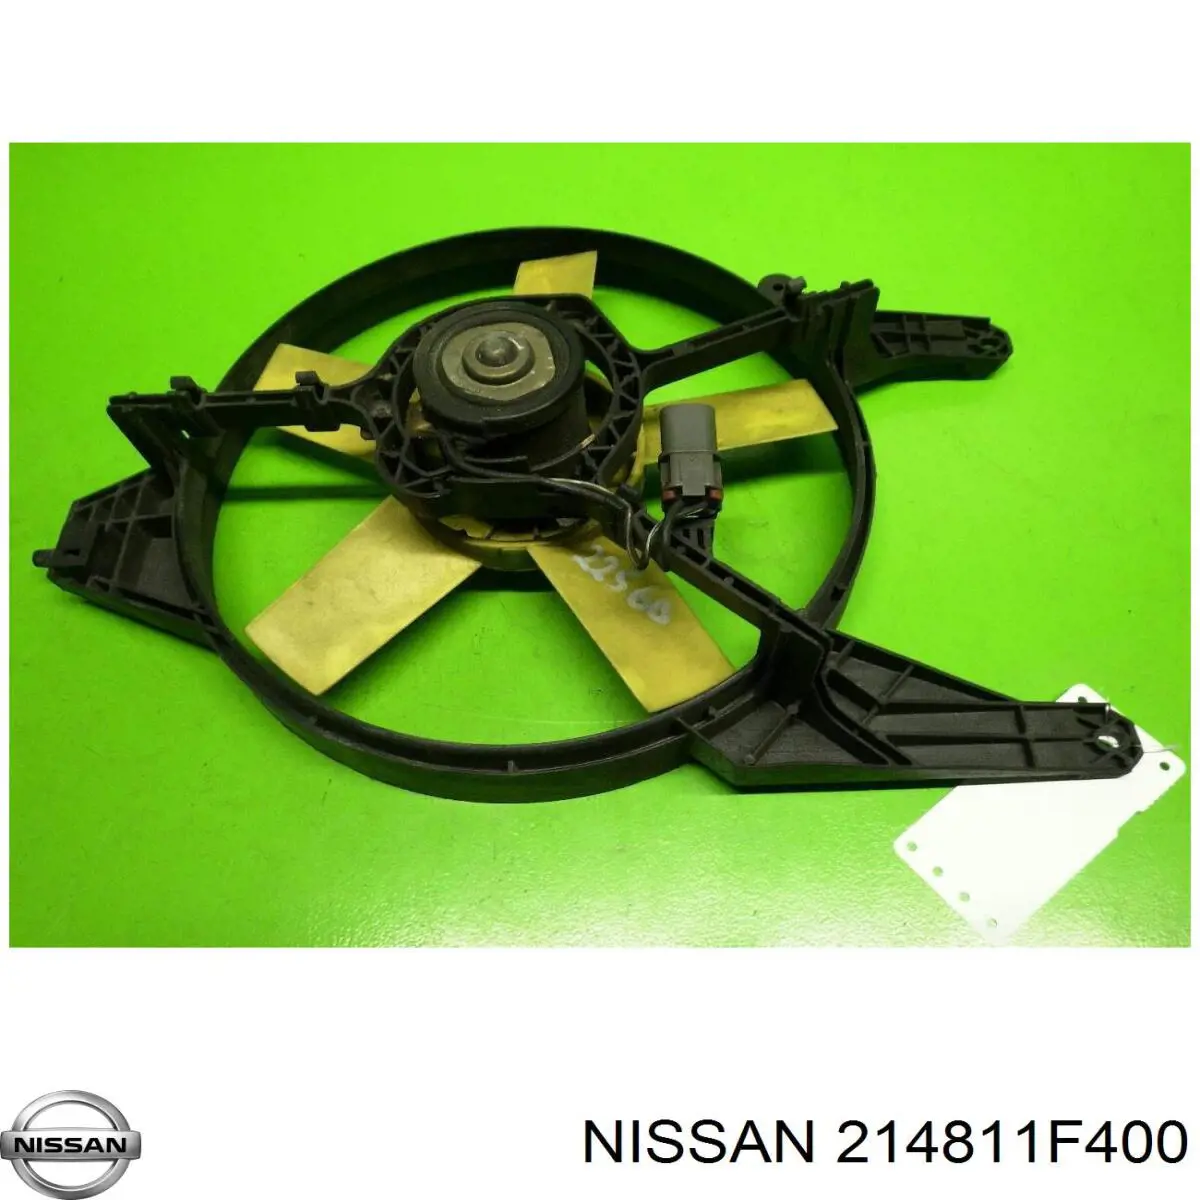 214811F400 Nissan difusor de radiador, ventilador de refrigeración, condensador del aire acondicionado, completo con motor y rodete